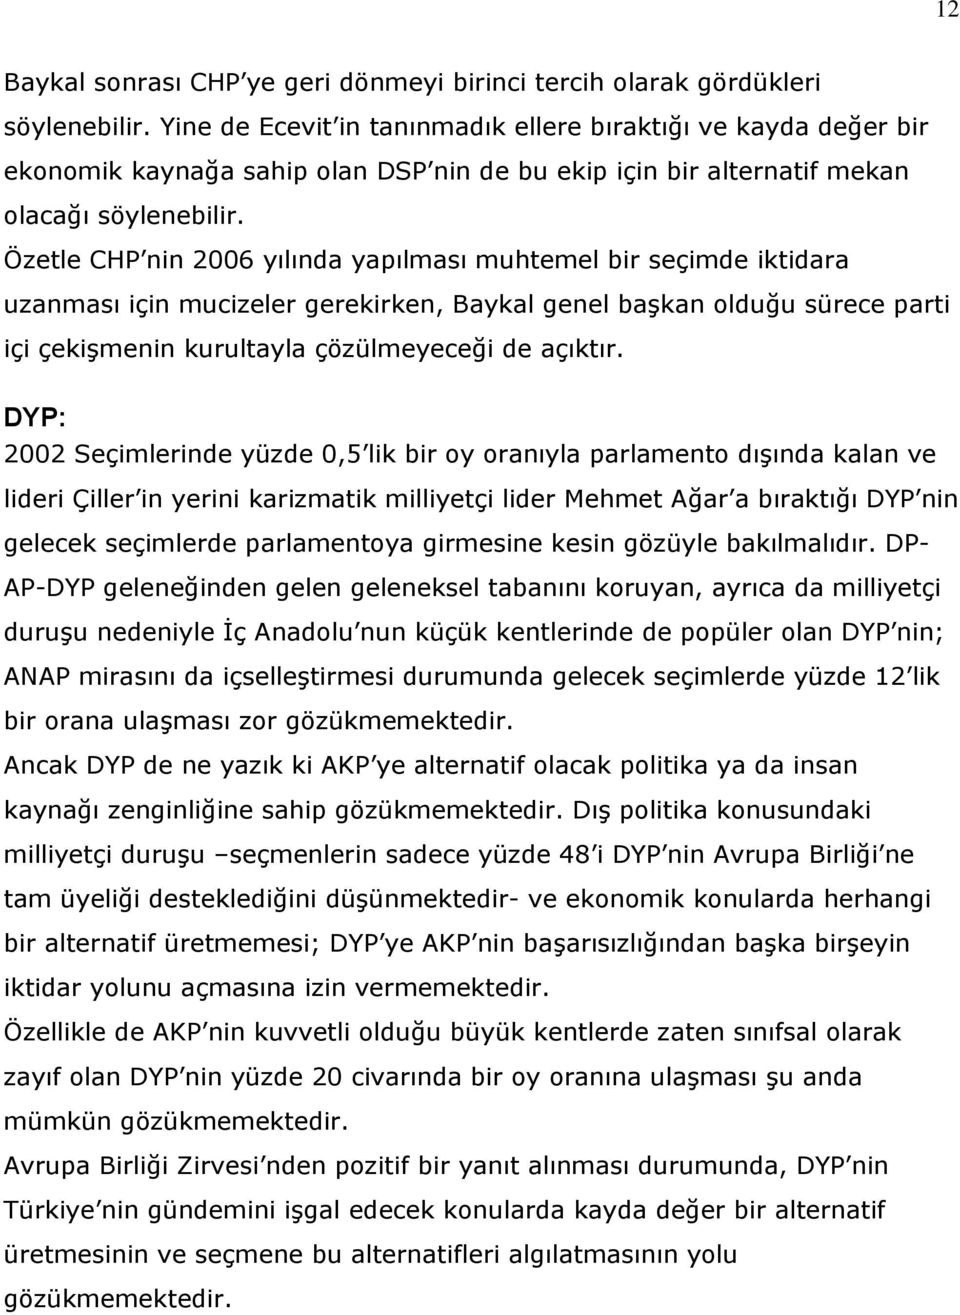 Özetle CHP nin 2006 yılında yapılması muhtemel bir seçimde iktidara uzanması için mucizeler gerekirken, Baykal genel başkan olduğu sürece parti içi çekişmenin kurultayla çözülmeyeceği de açıktır.